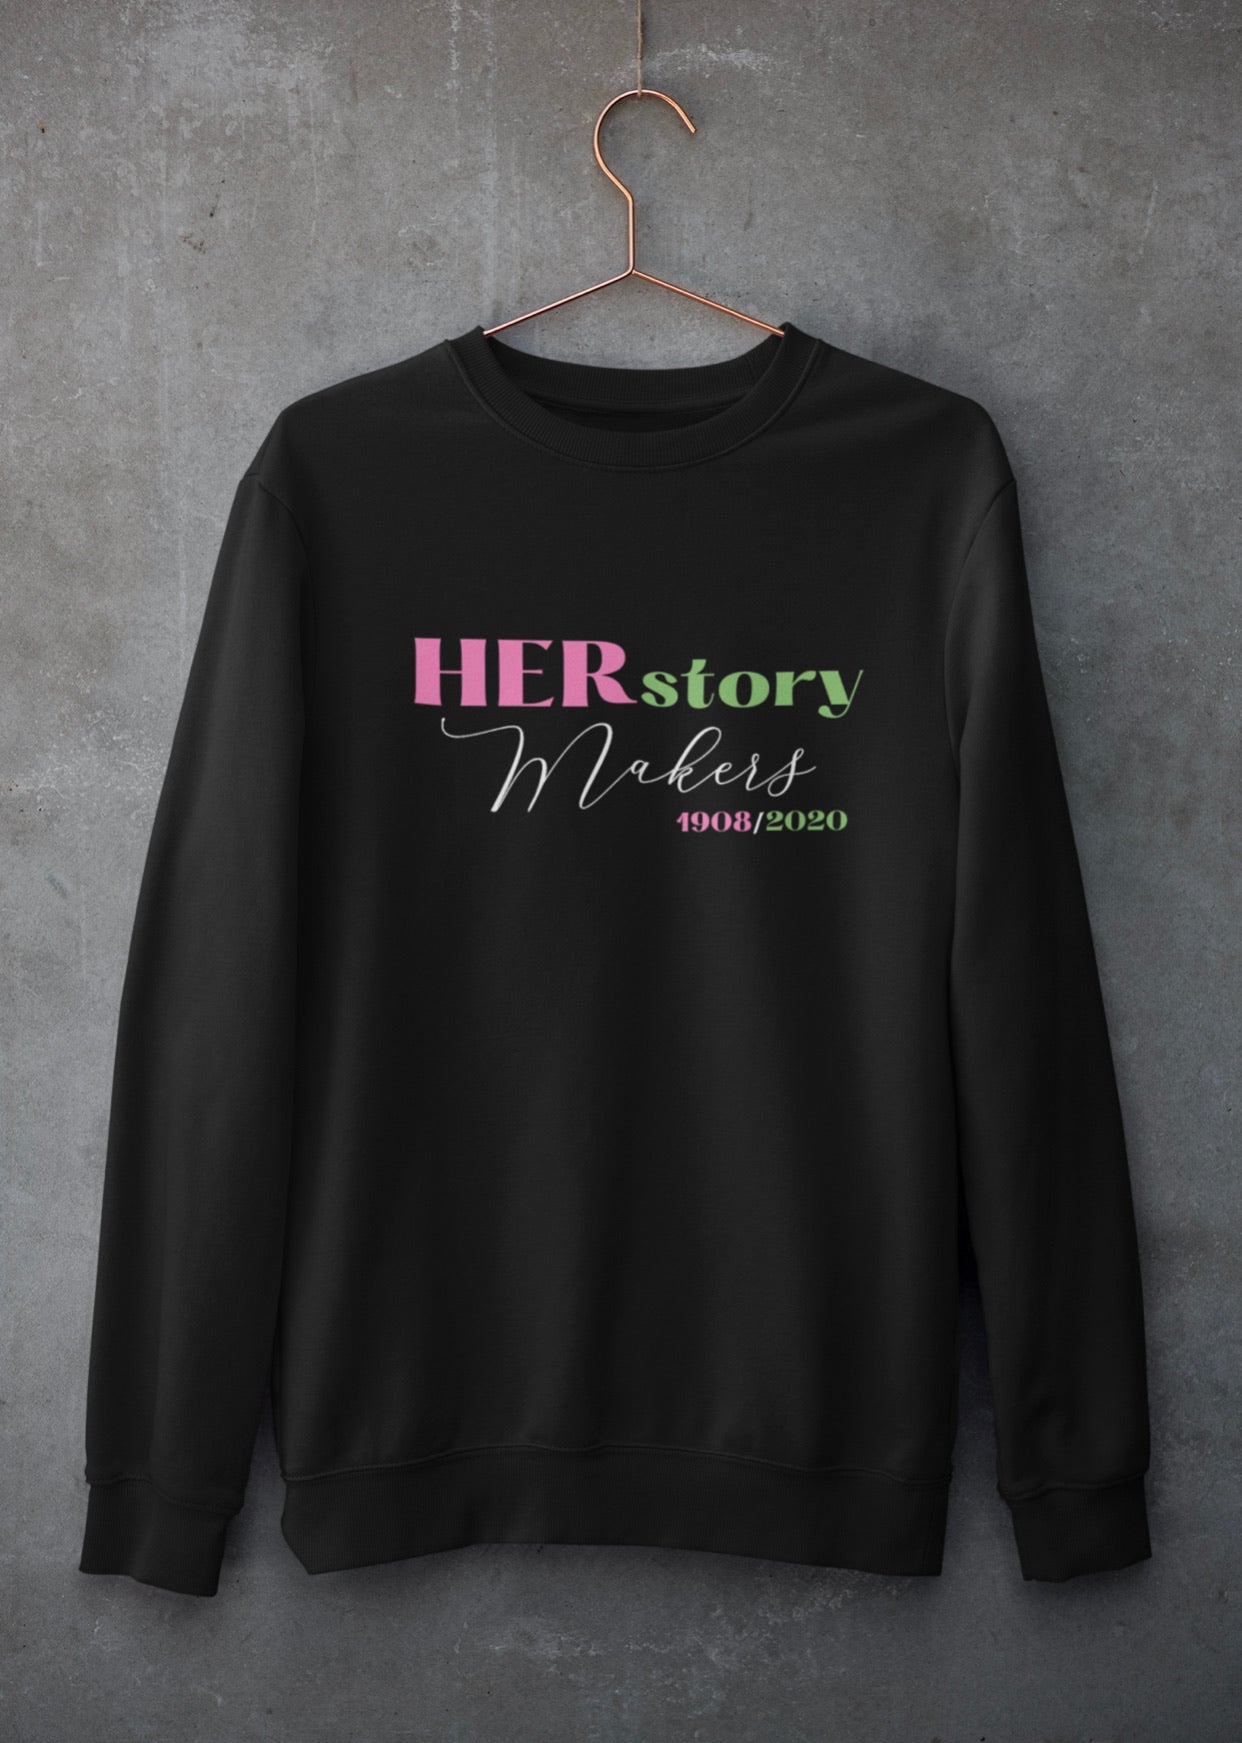 HERstory Makers Sweatshirt